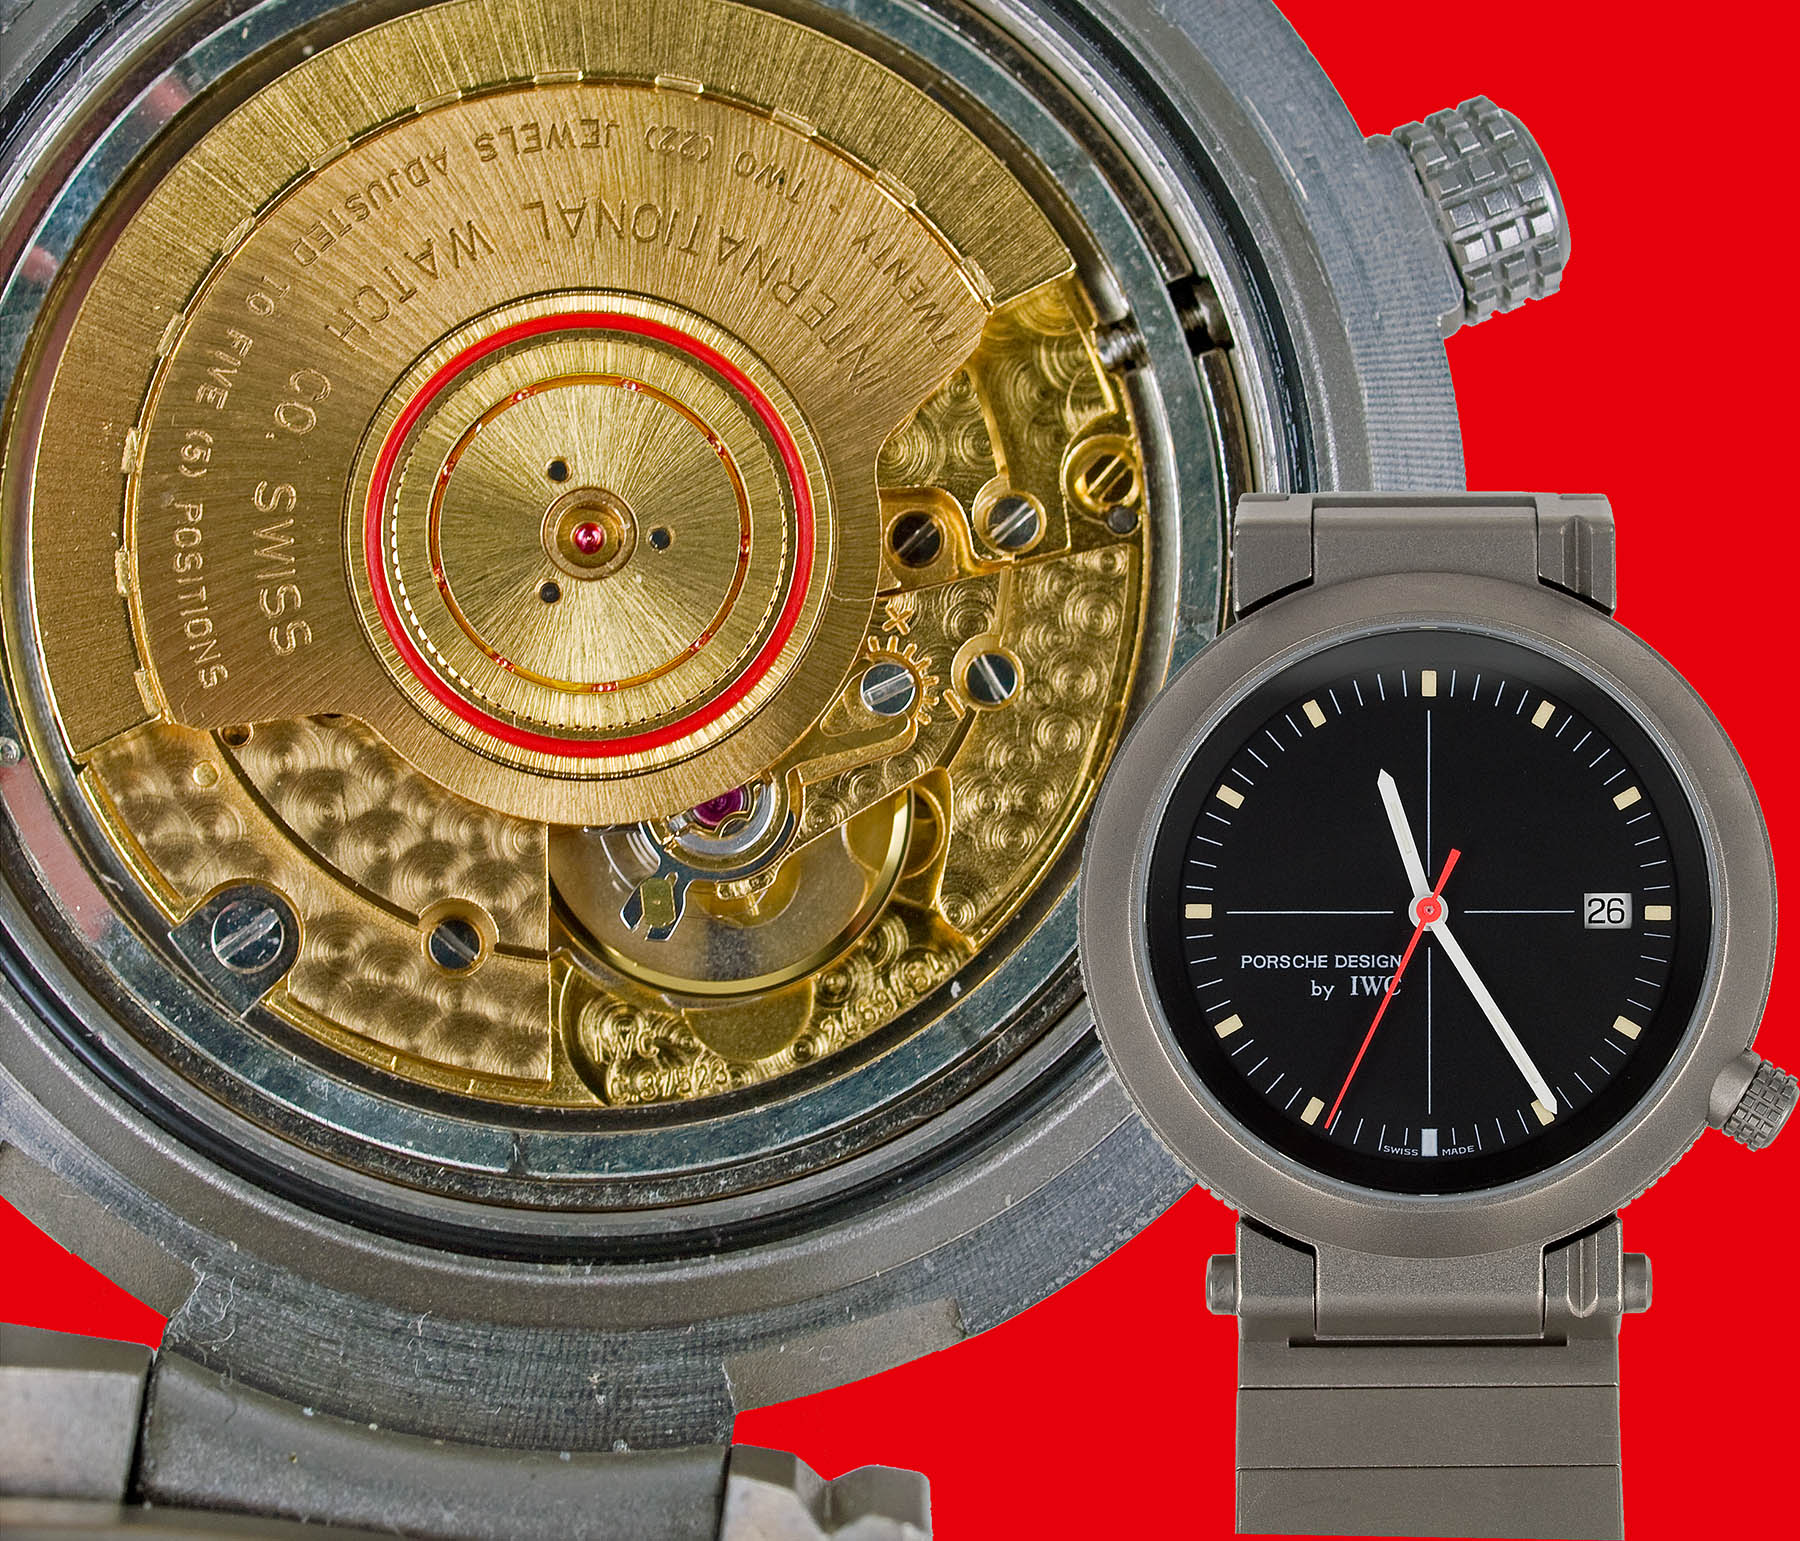 IWC Porsche Design 3511 | Vintage timepieces | IWC Forum